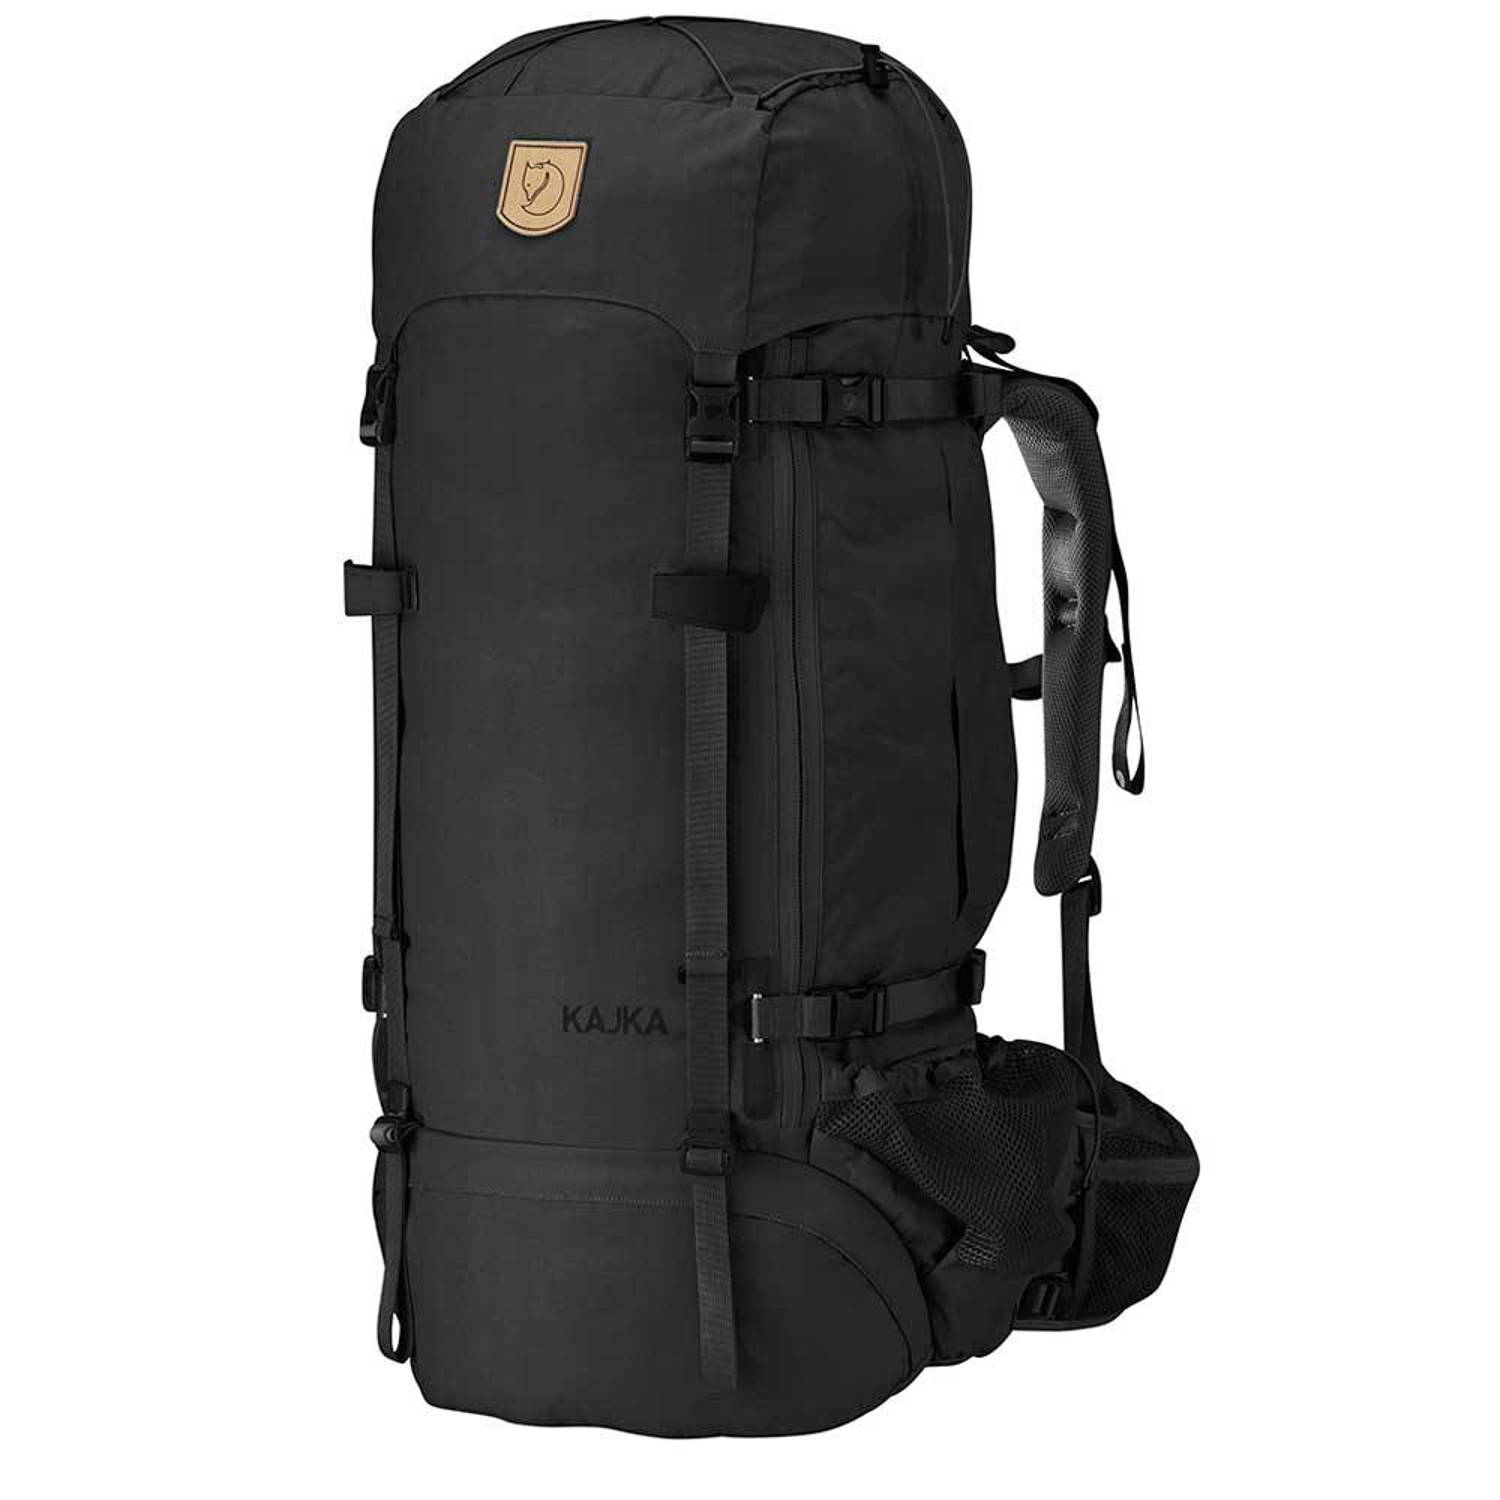 Fjällräven backpack Kajka 65W zwart